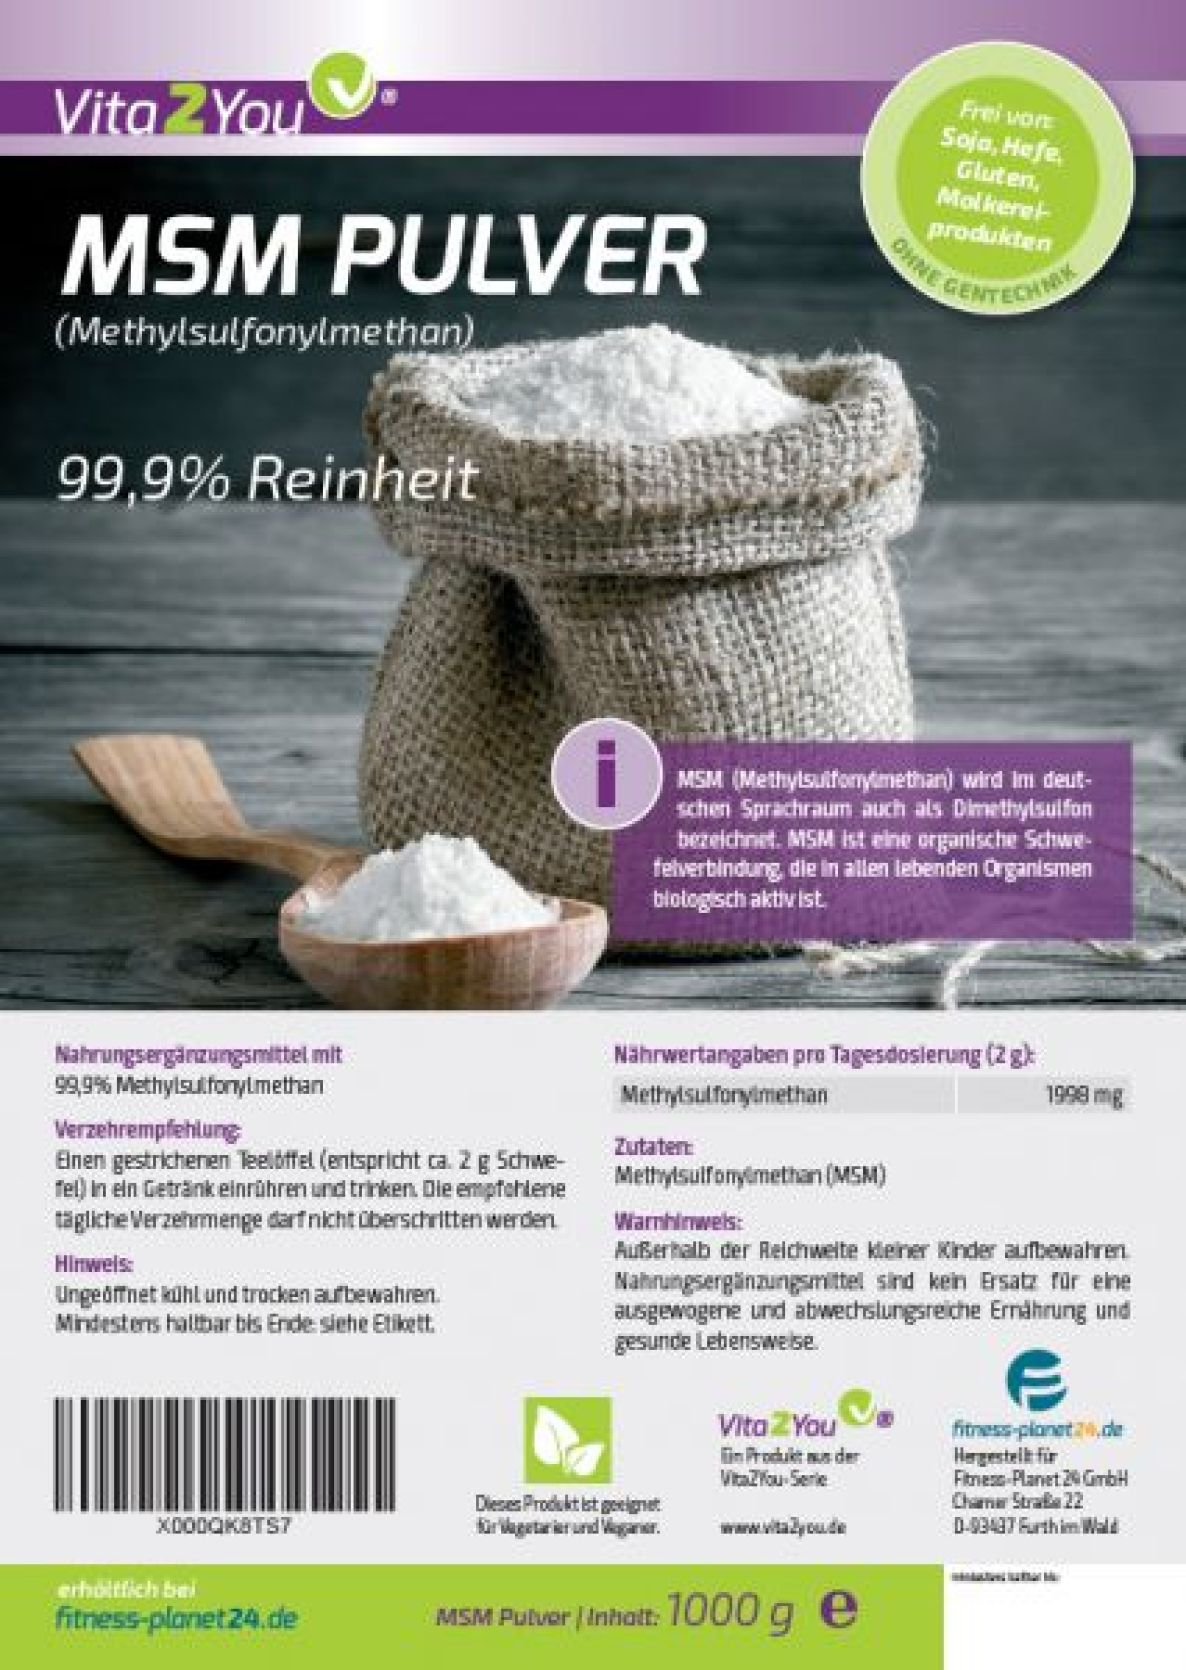 Vita2You MSM Pulver 1000g - Methylsulfonylmethan Schwefel - 99,9% Reinheit 